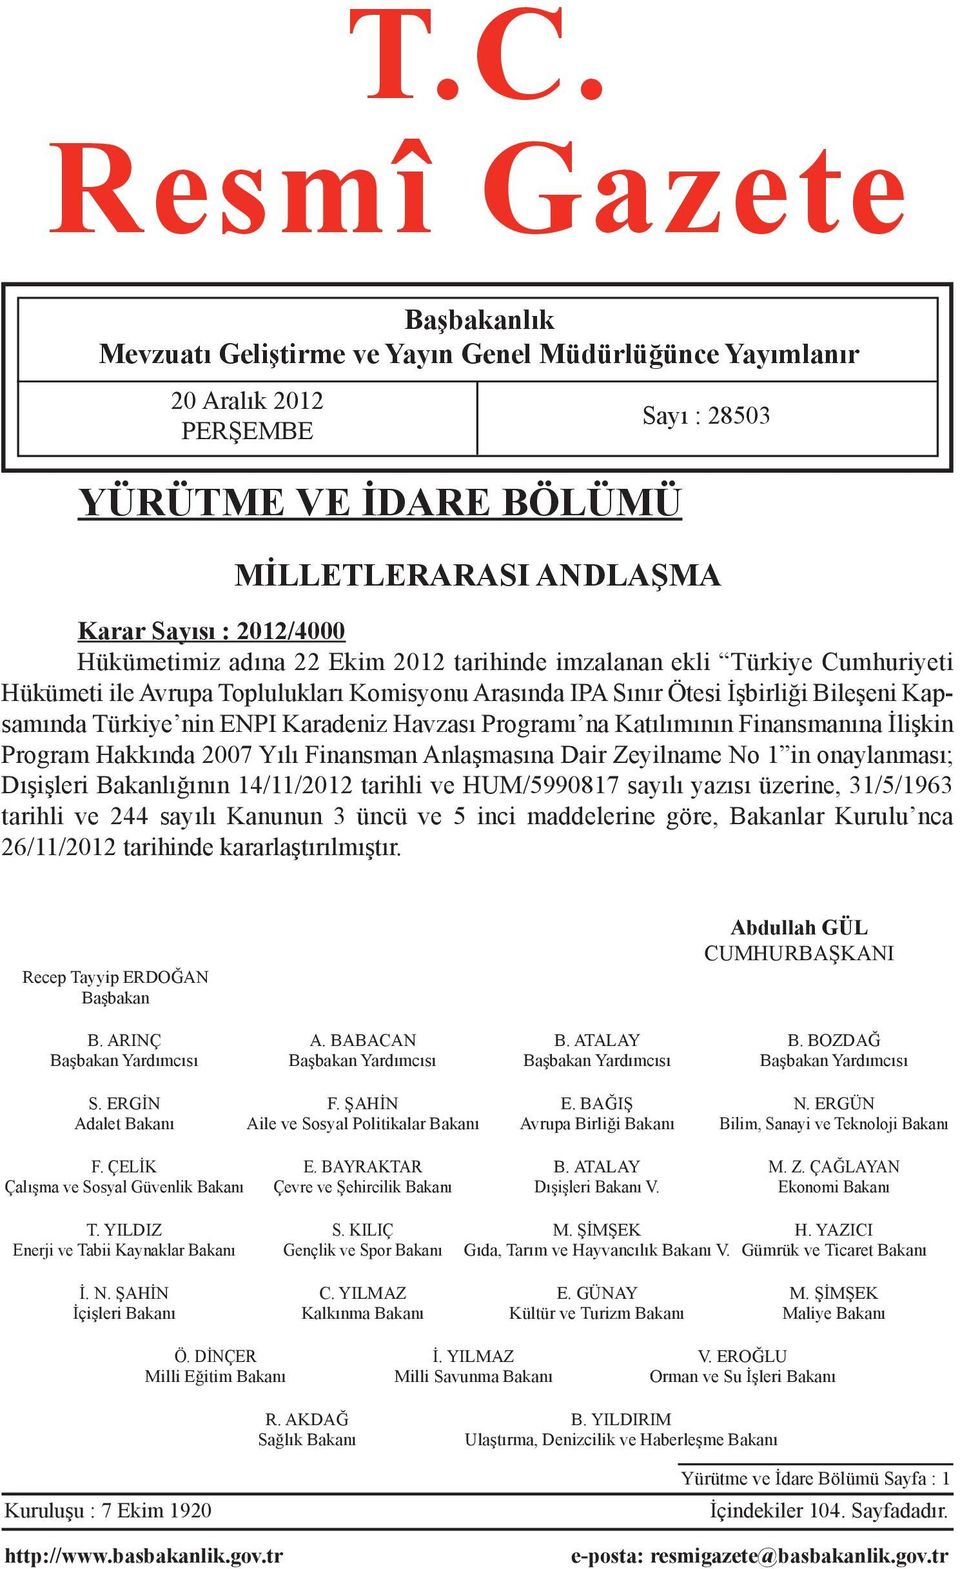 Karadeniz Havzası Programı na Katılımının Finansmanına İlişkin Program Hakkında 2007 Yılı Finansman Anlaşmasına Dair Zeyilname No 1 in onaylanması; Dışişleri Bakanlığının 14/11/2012 tarihli ve